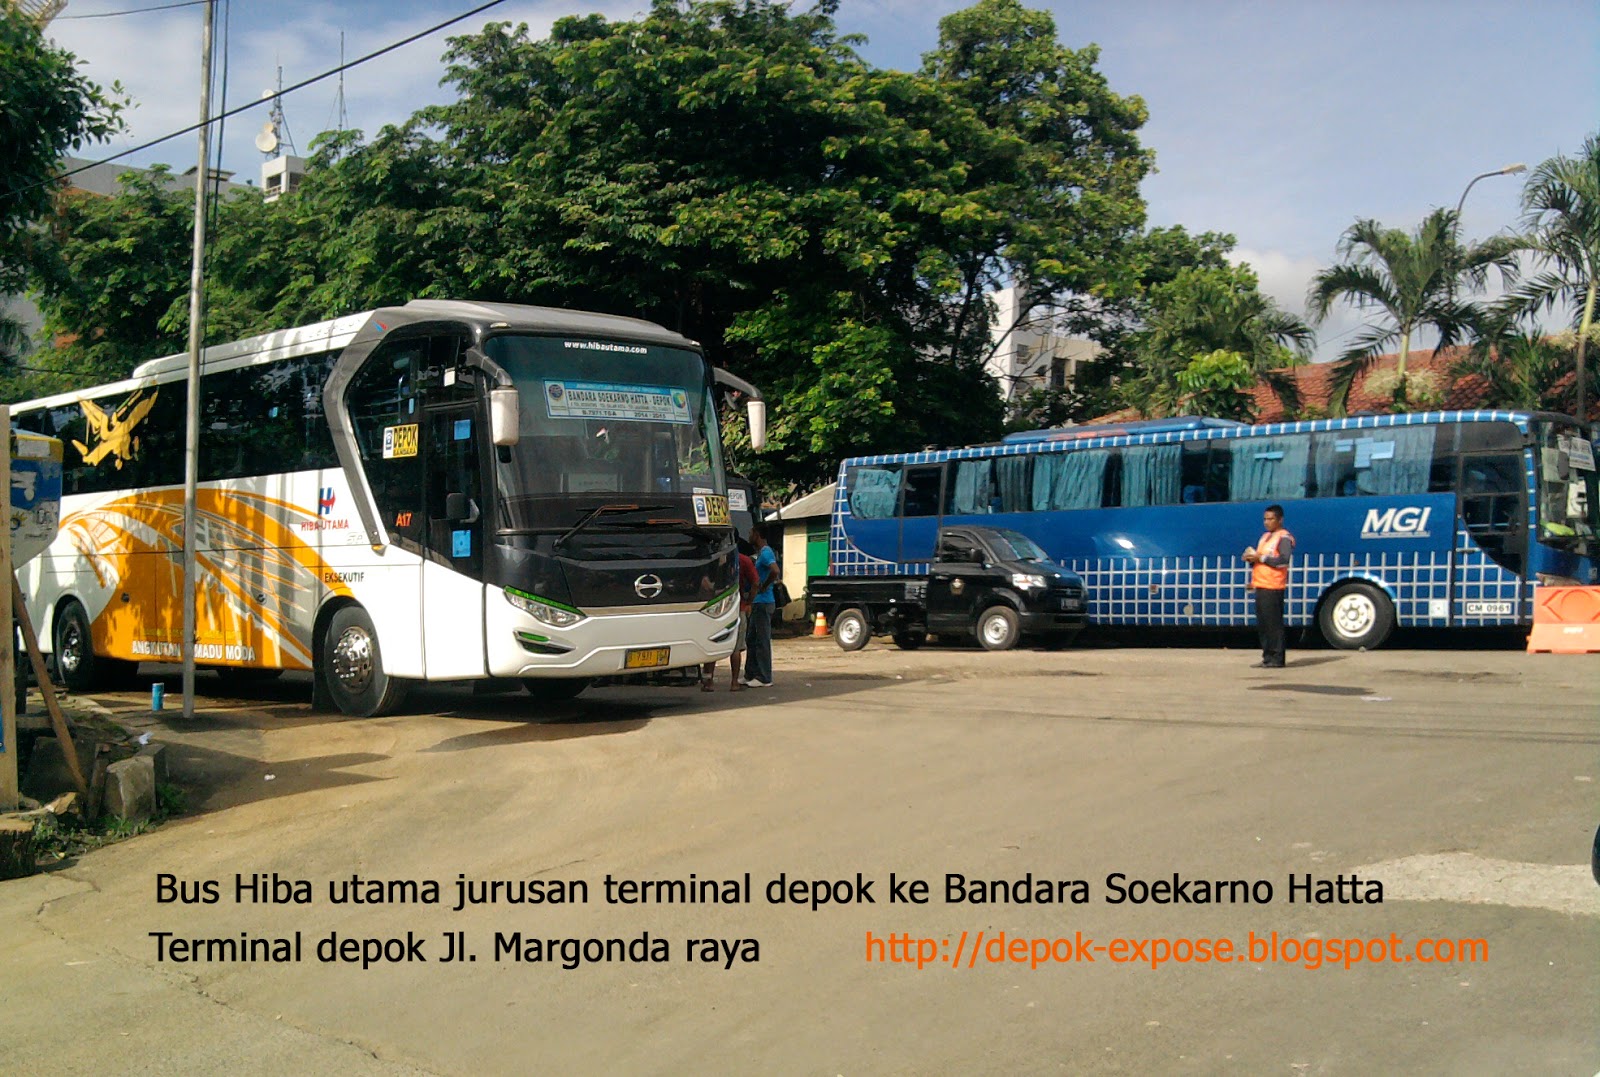 DEPOK EXPOSE Depok Ke Bandara Soekarno Hatta Dengan Bis Damri Dan